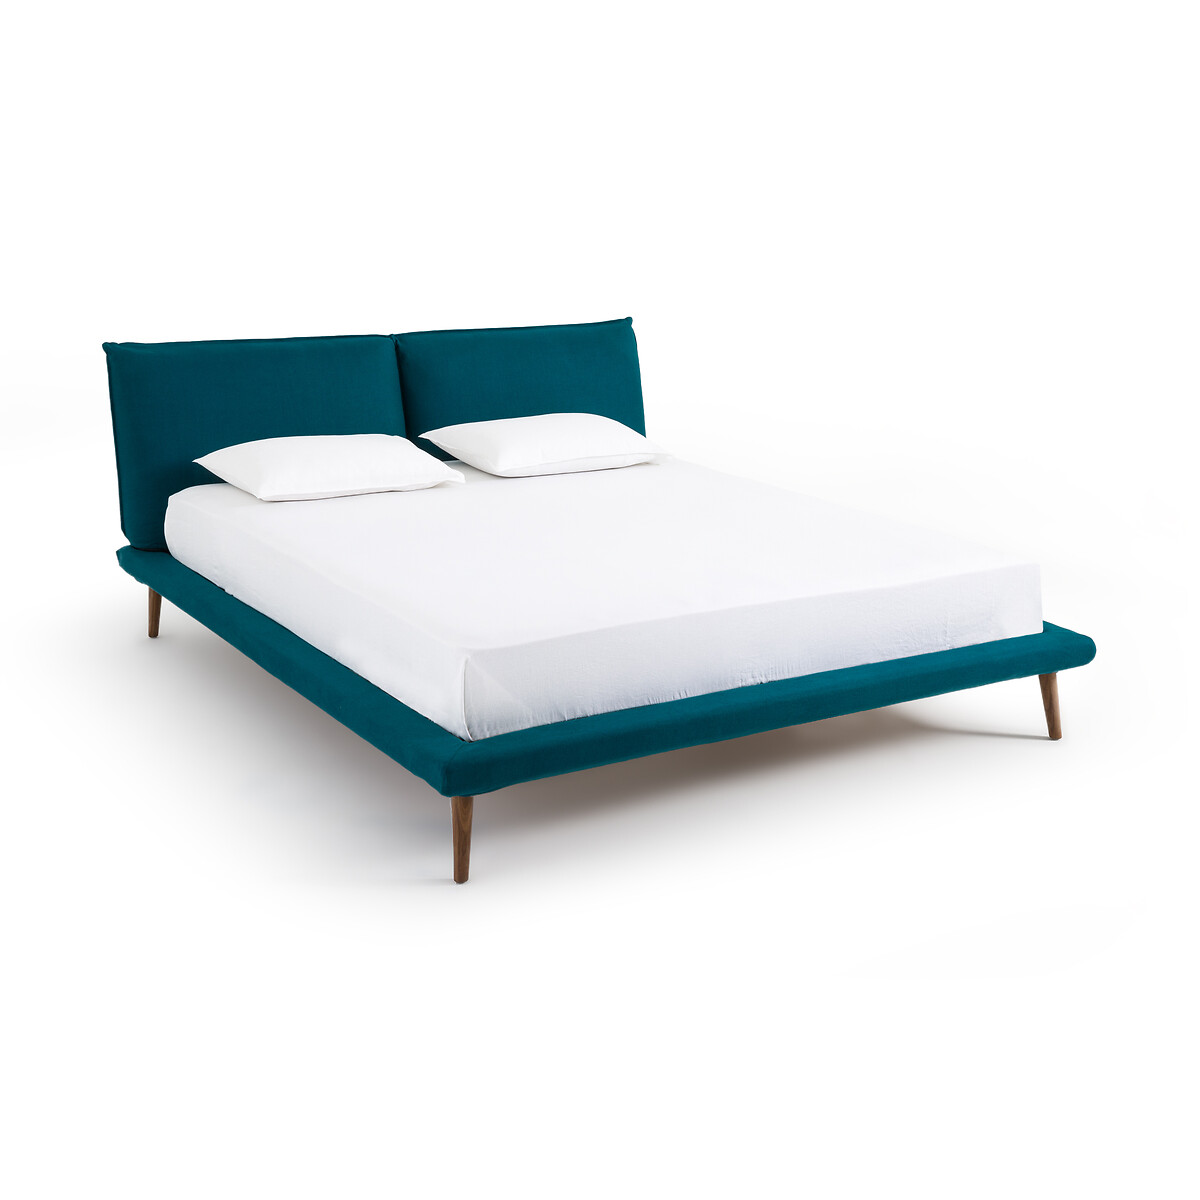 Кровать изо льна без кроватного основания Aurore дизайн Э  Галлина  160 x 200 см синий LaRedoute, размер 160 x 200 см - фото 1